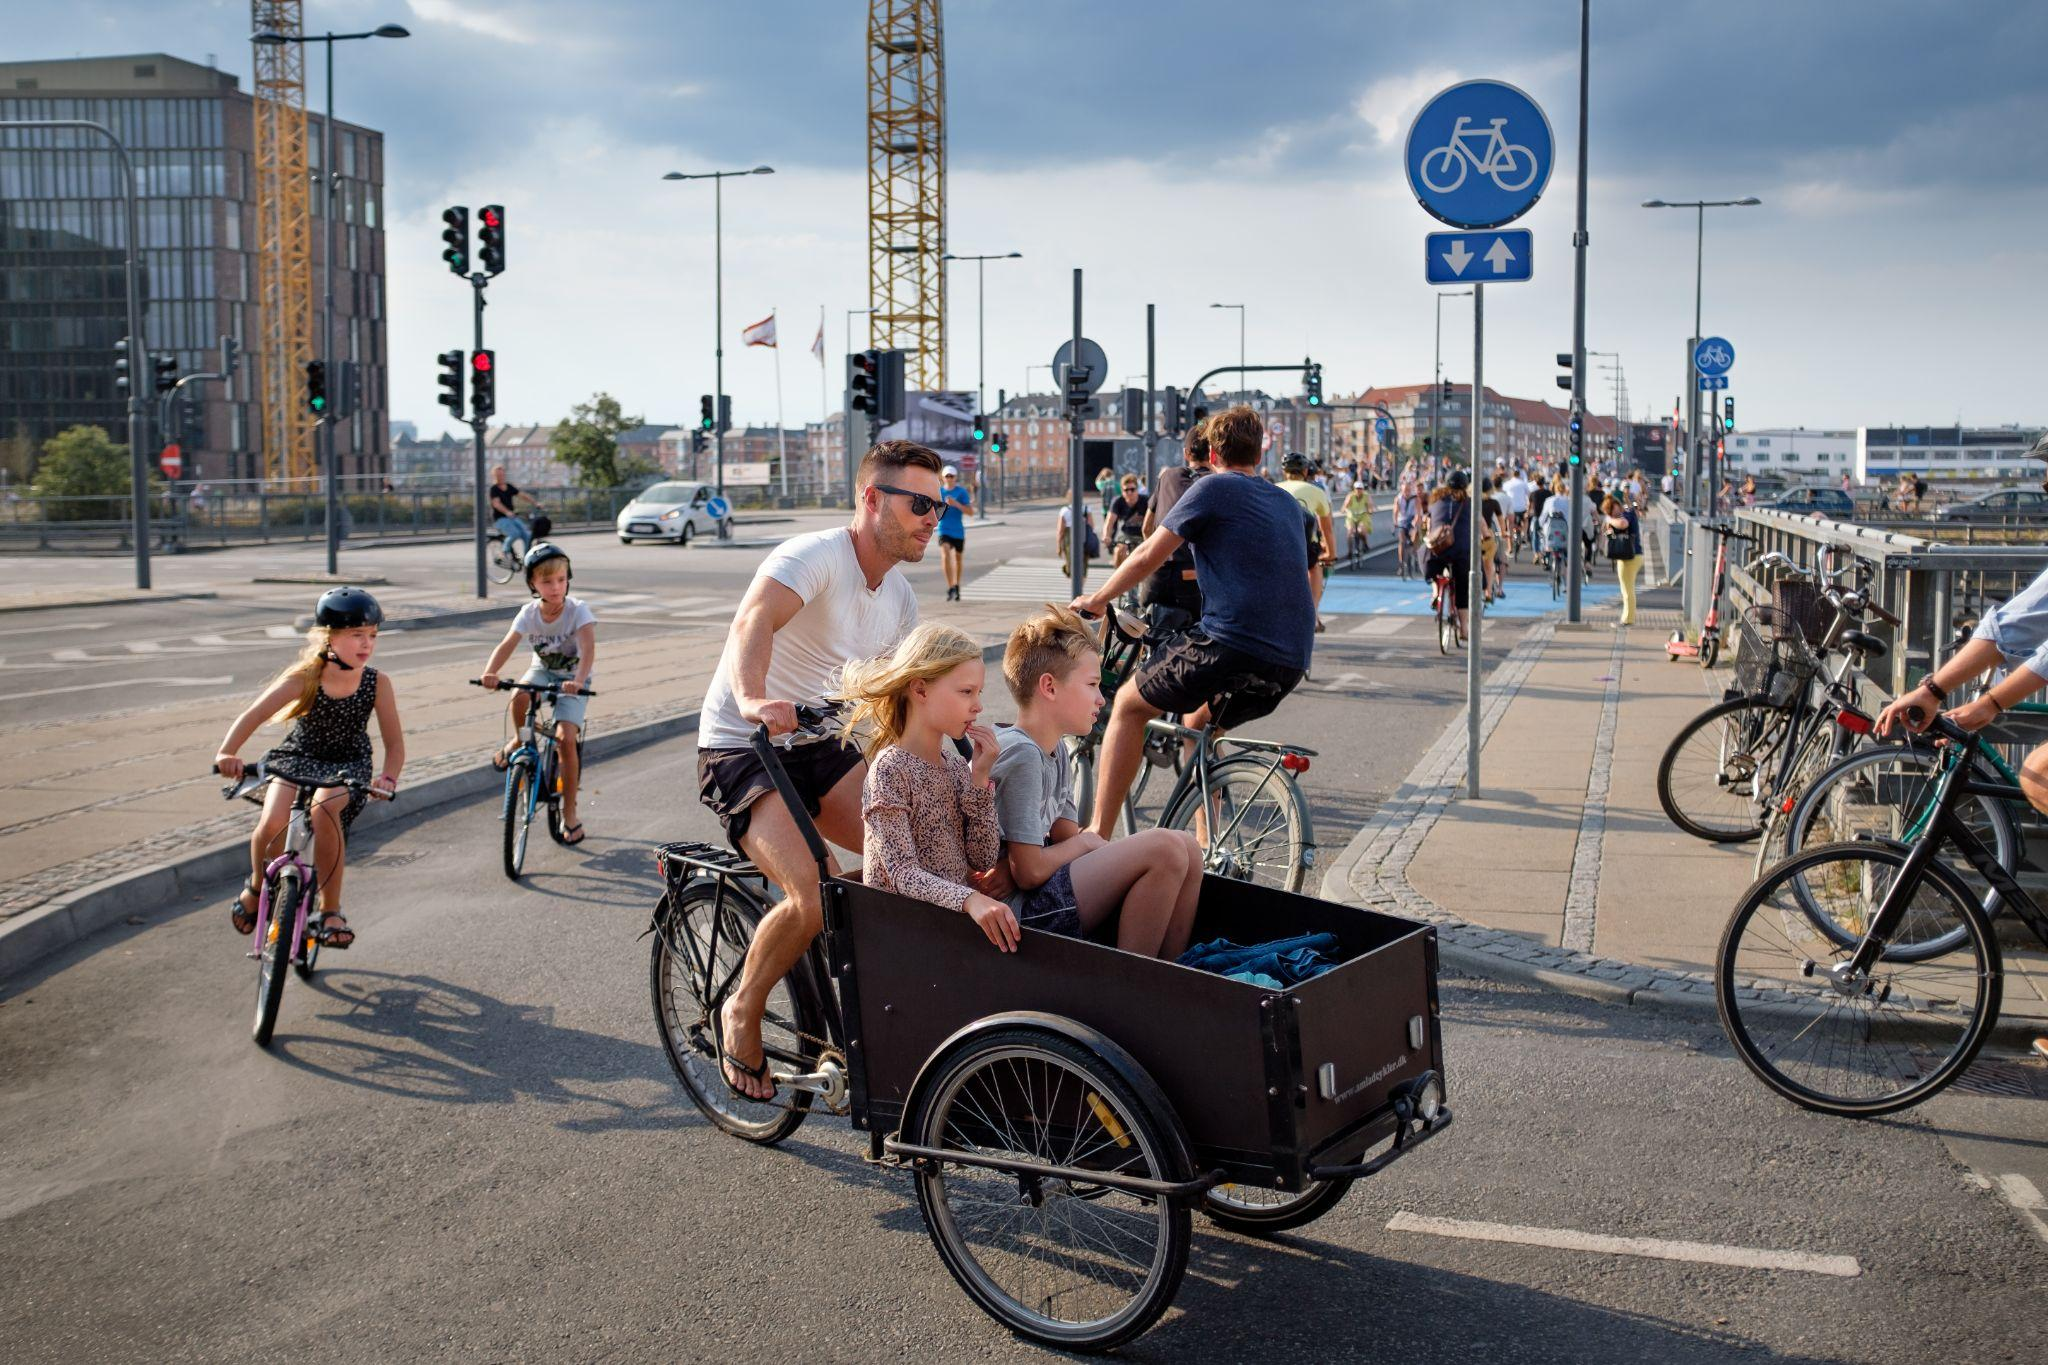 コペンハーゲンの自転車専用レーンで、前にリアカーのような大きな荷台のある自転車に子ども2人を乗せて父親と思われる人が漕いでいます(写真)